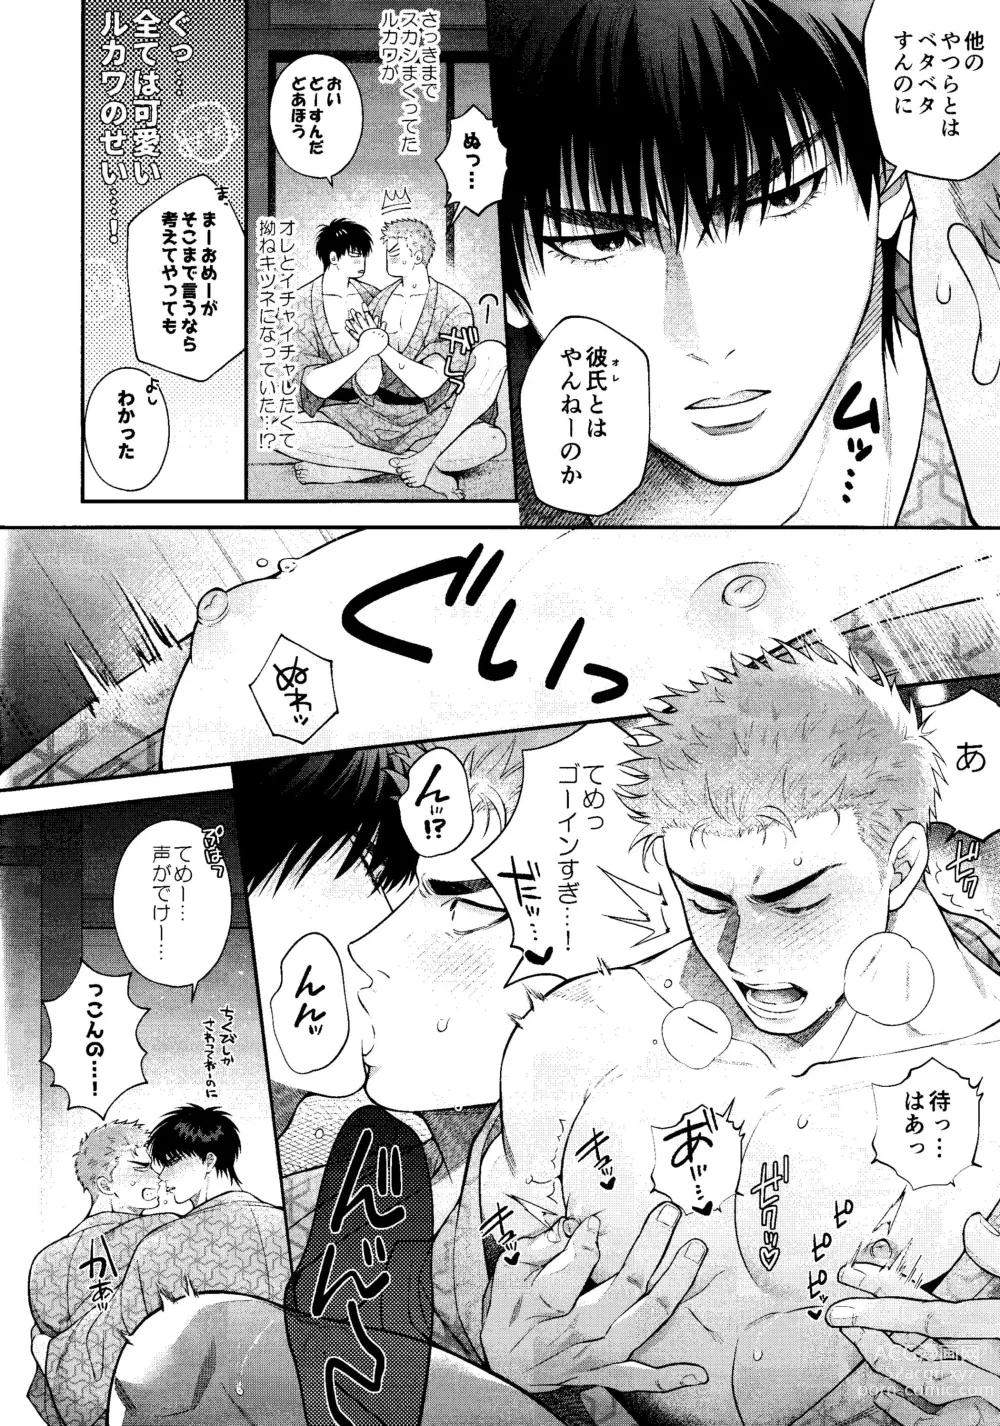 Page 8 of doujinshi Subeteha Kawaii teme-no Sei!